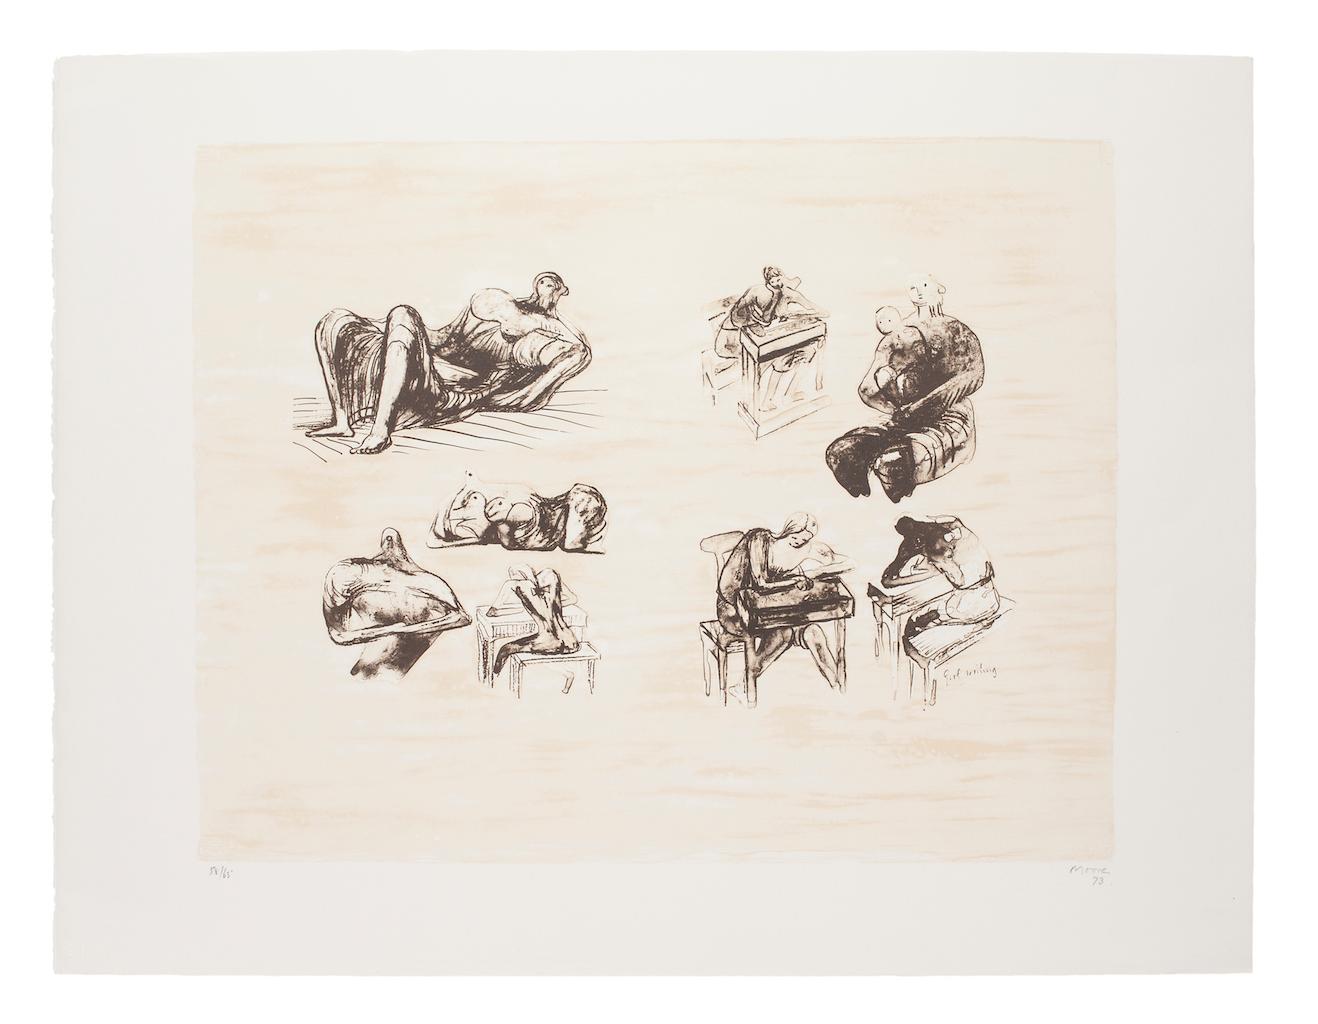 Eight Sculptural Ideas est une lithographie originale réalisée par l'artiste britannique Henry Moore (Castleford, 1898 - Much Hadham, 1986).

Signé et daté à la main en bas à droite, 73.

Dimensions de l'image : 39x50 cm.

Édition numérotée 58/65.